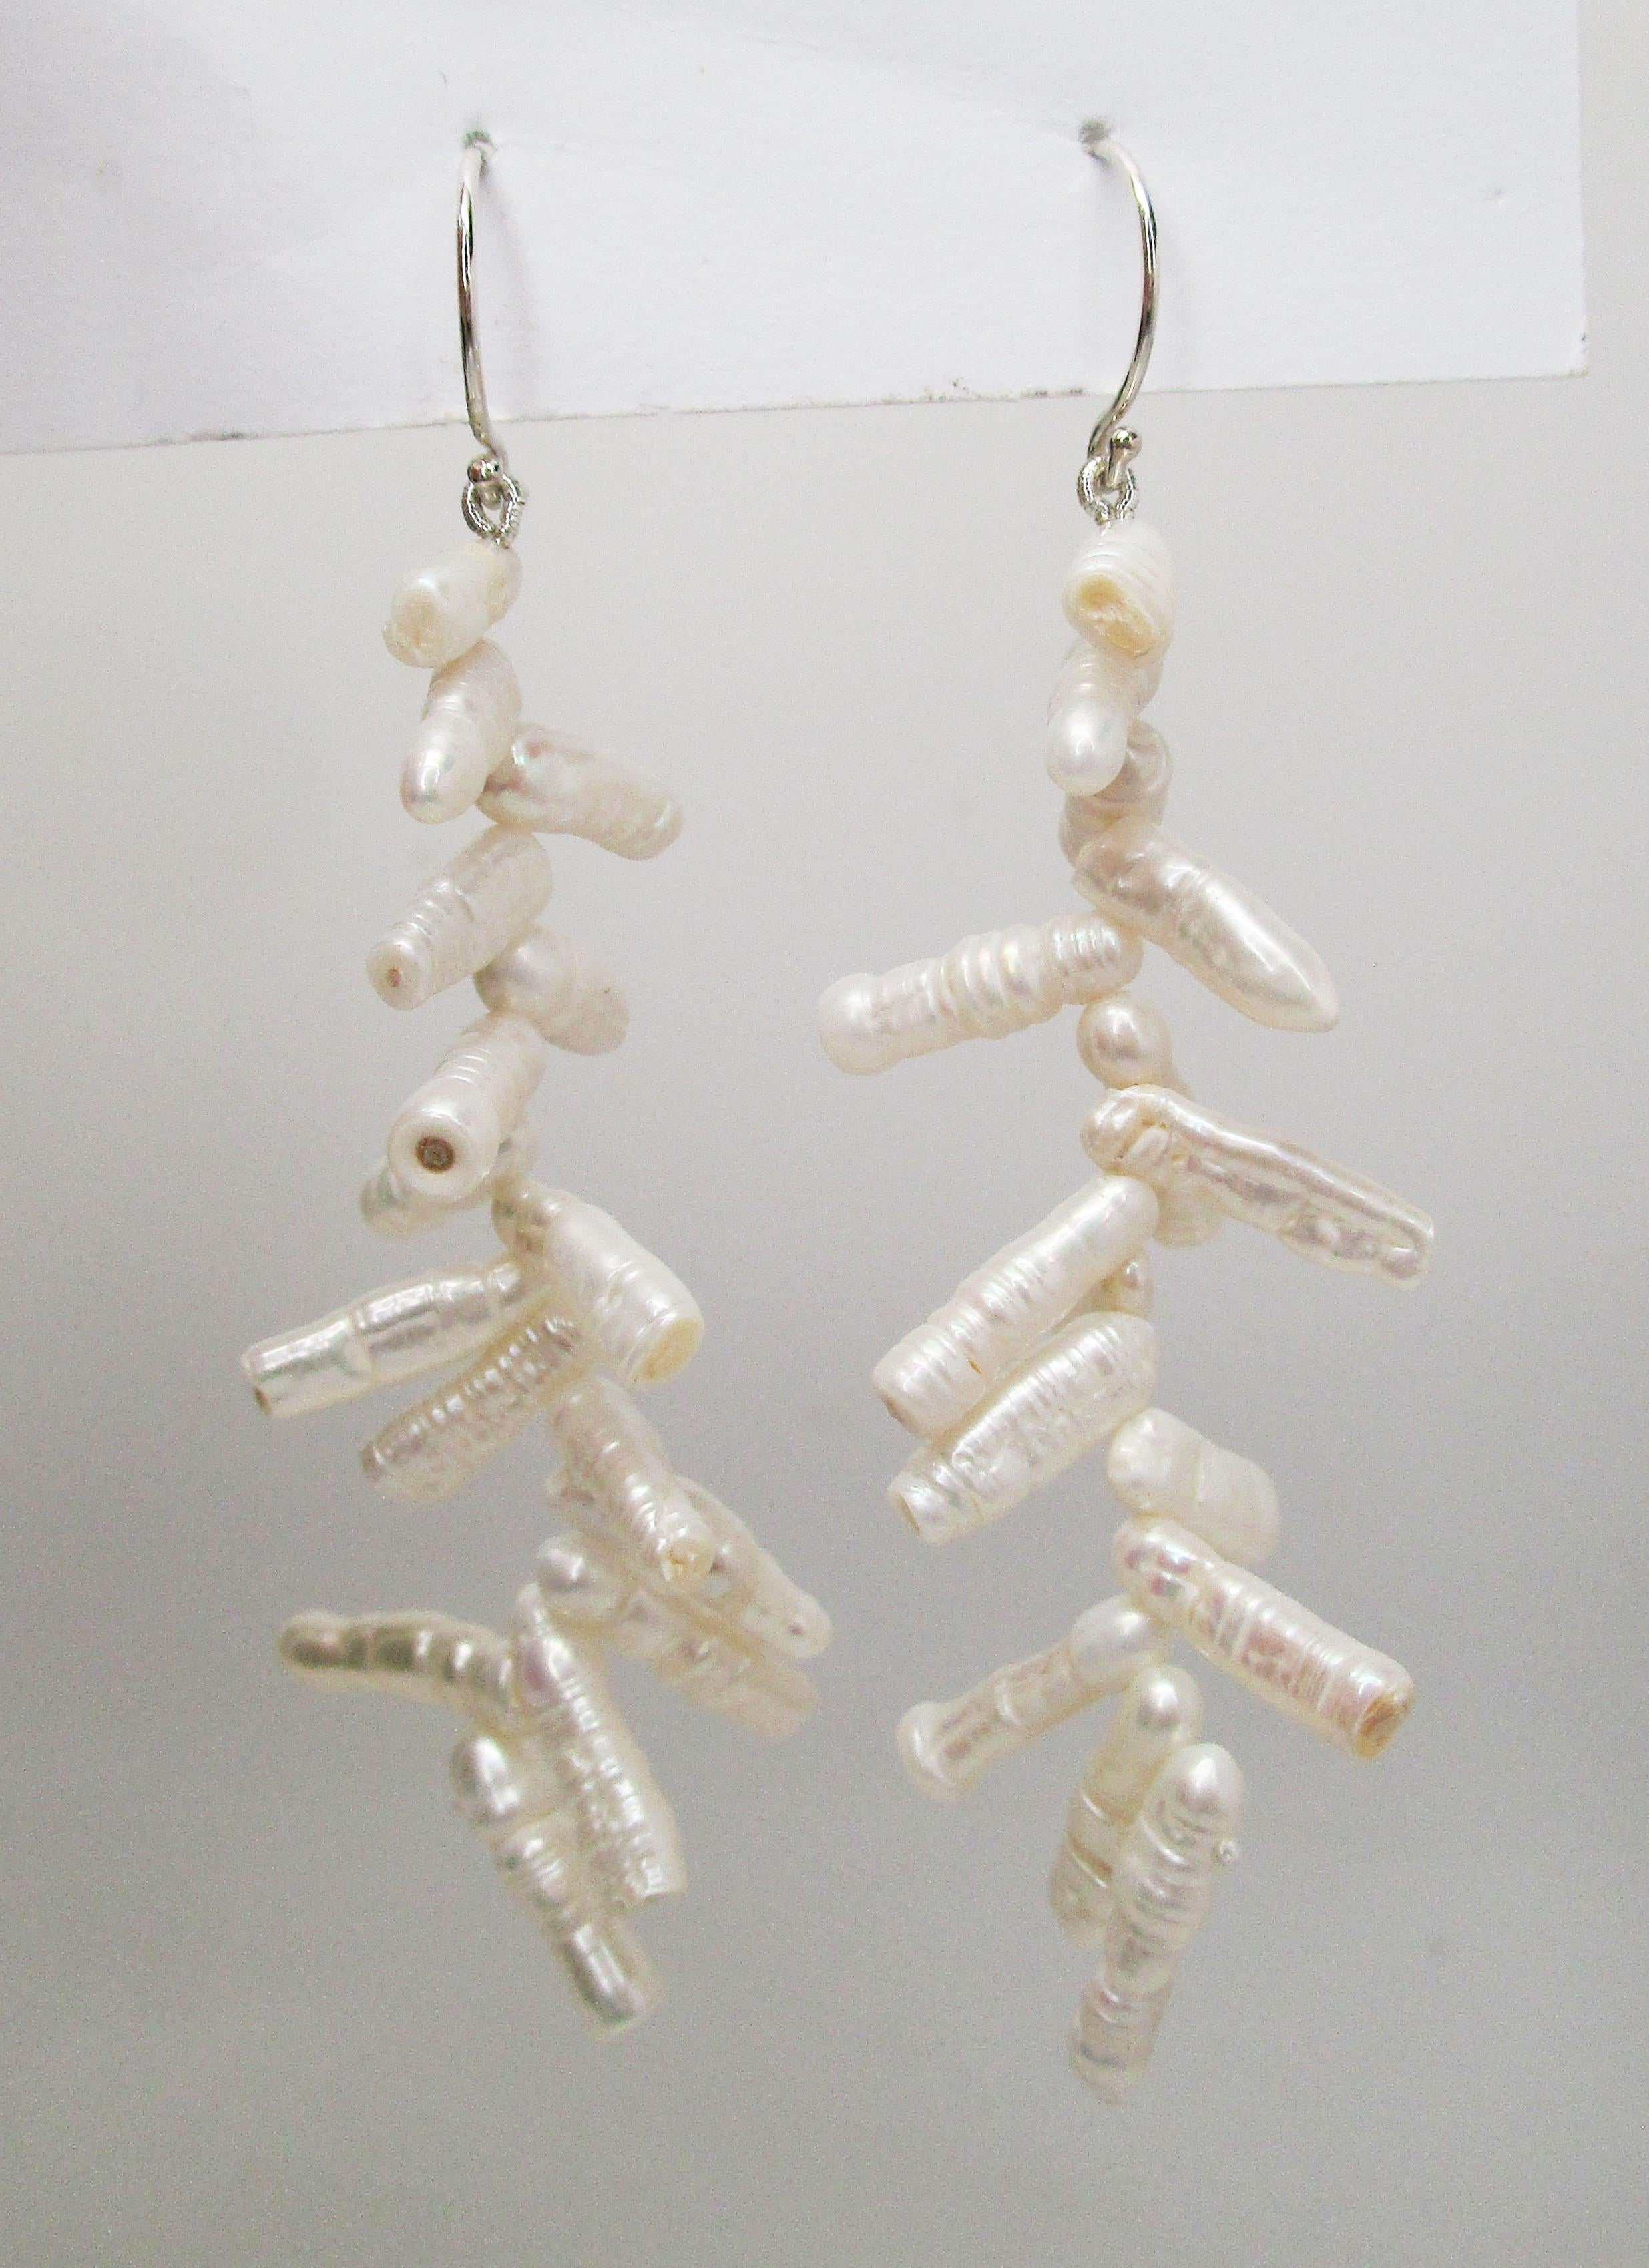 Cette remarquable paire de boucles d'oreilles pendantes est composée de fils en argent sterling en forme de crochet de berger et d'un étonnant éventail de perles de branche blanches brillantes. Les perles ont un lustre incroyable et une couleur